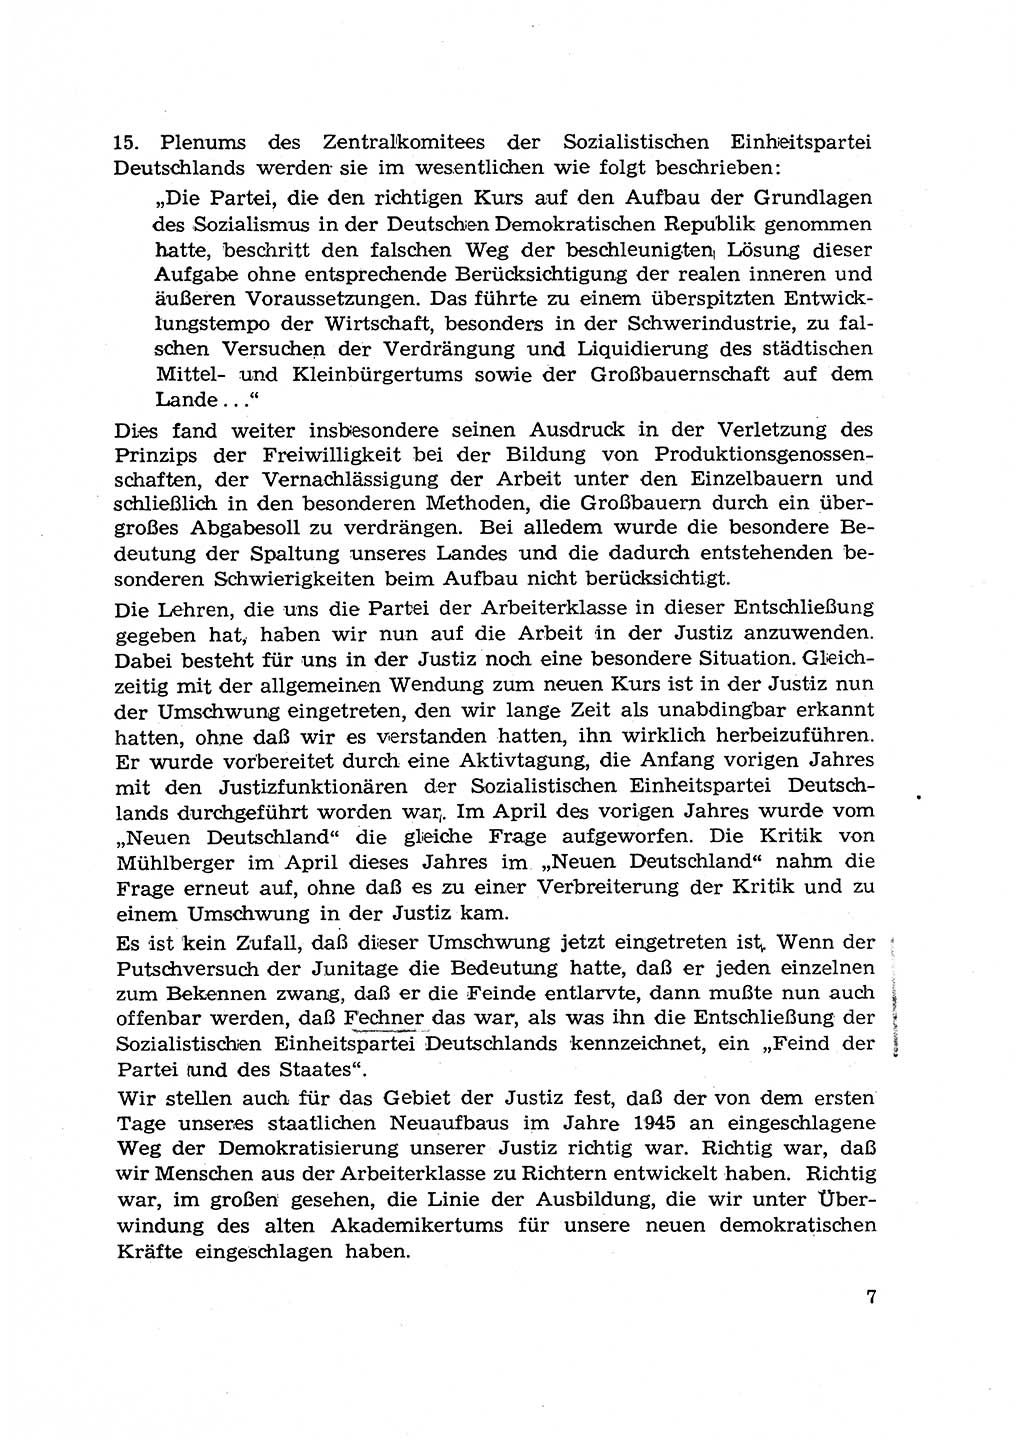 Hauptaufgaben der Justiz [Deutsche Demokratische Republik (DDR)] bei der Durchführung des neuen Kurses 1953, Seite 7 (Hpt.-Aufg. J. DDR 1953, S. 7)